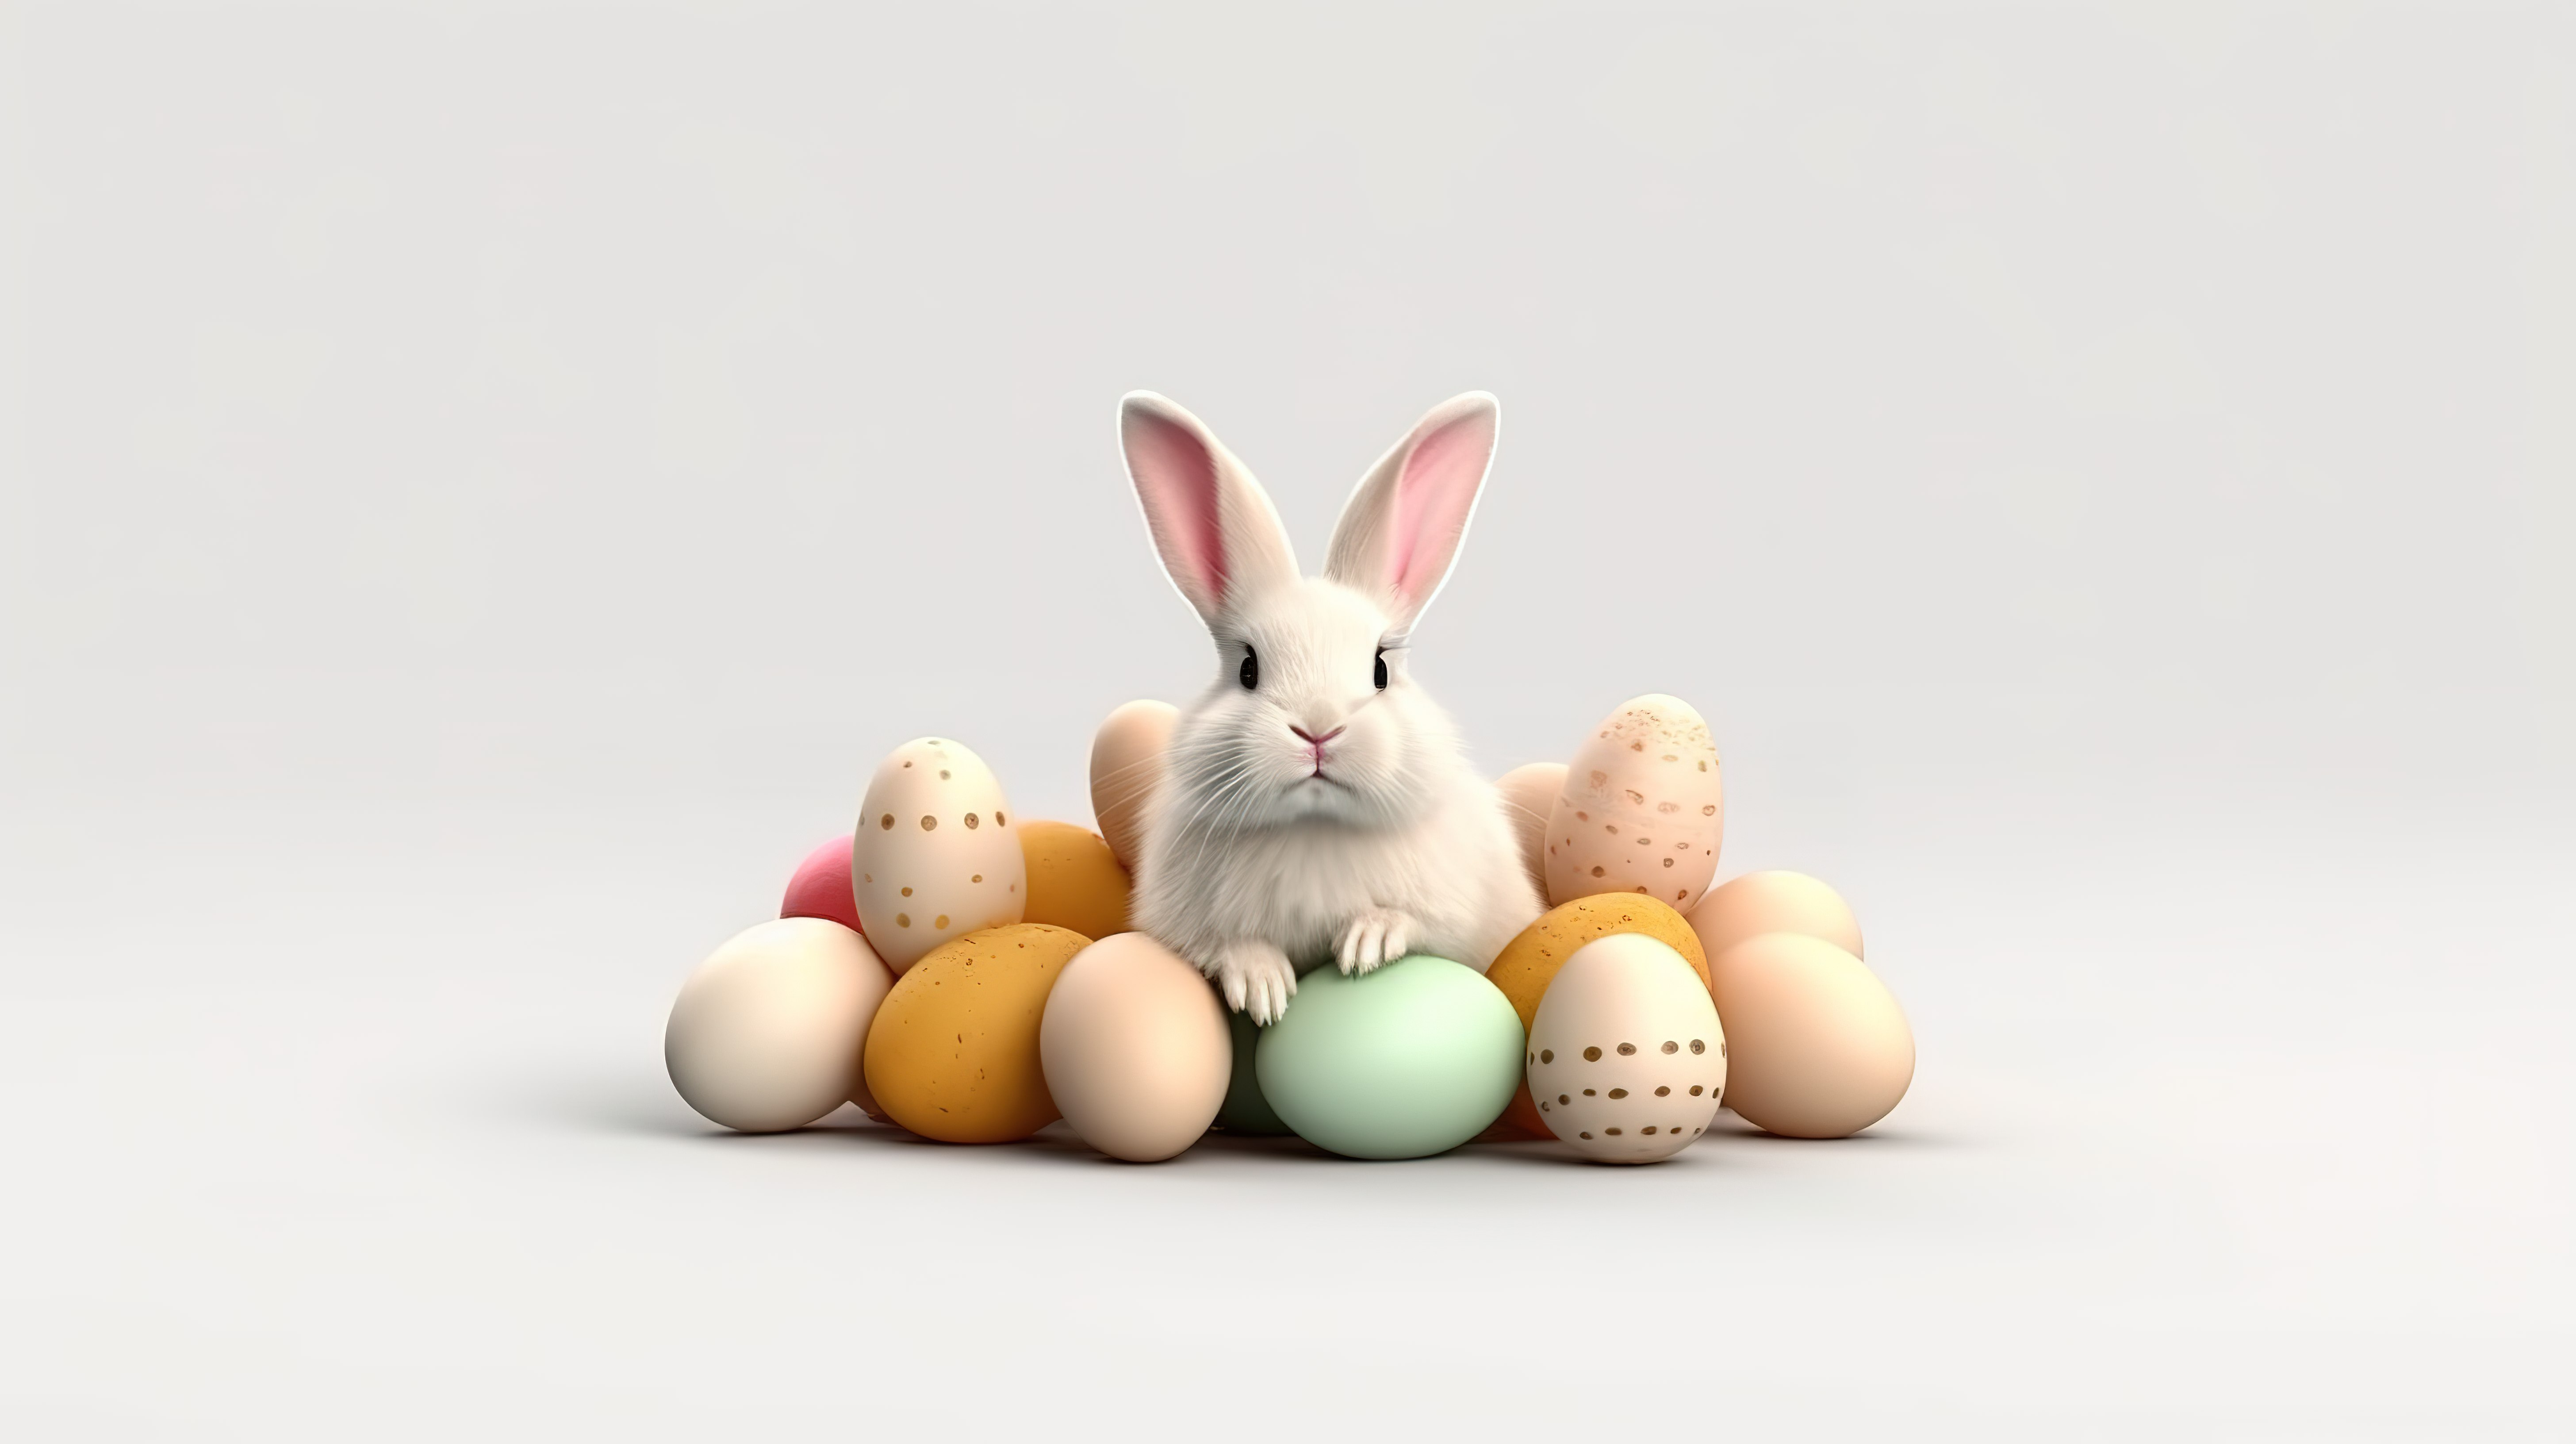 复活节快乐 3D 兔子和鸡蛋在现实设计白色背景矢量装饰图片